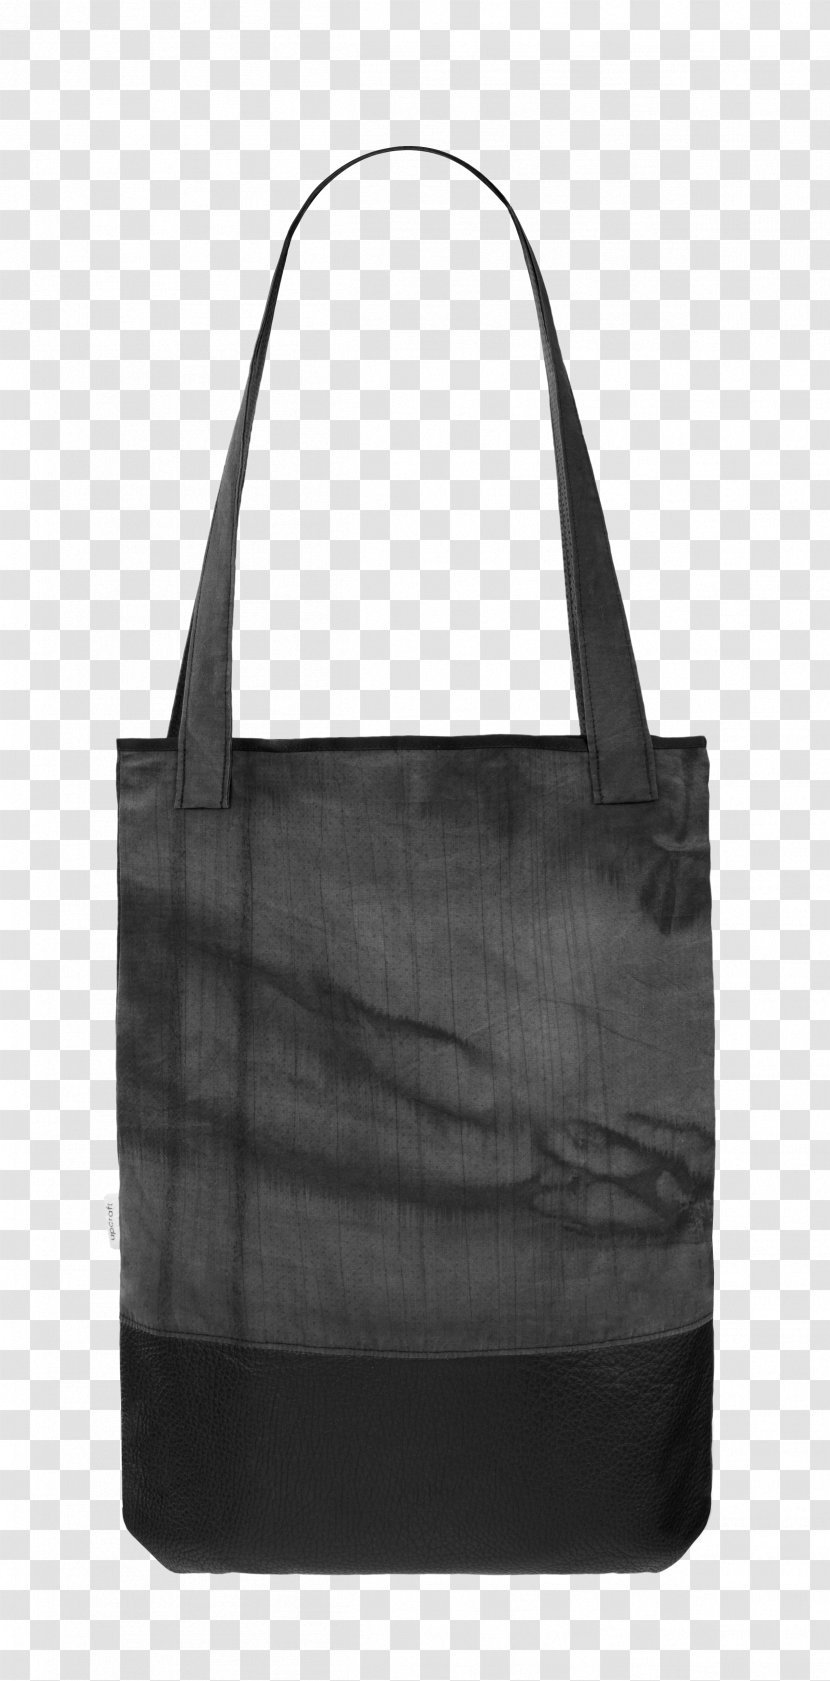 Tote Bag Leather Handbag Transparent PNG